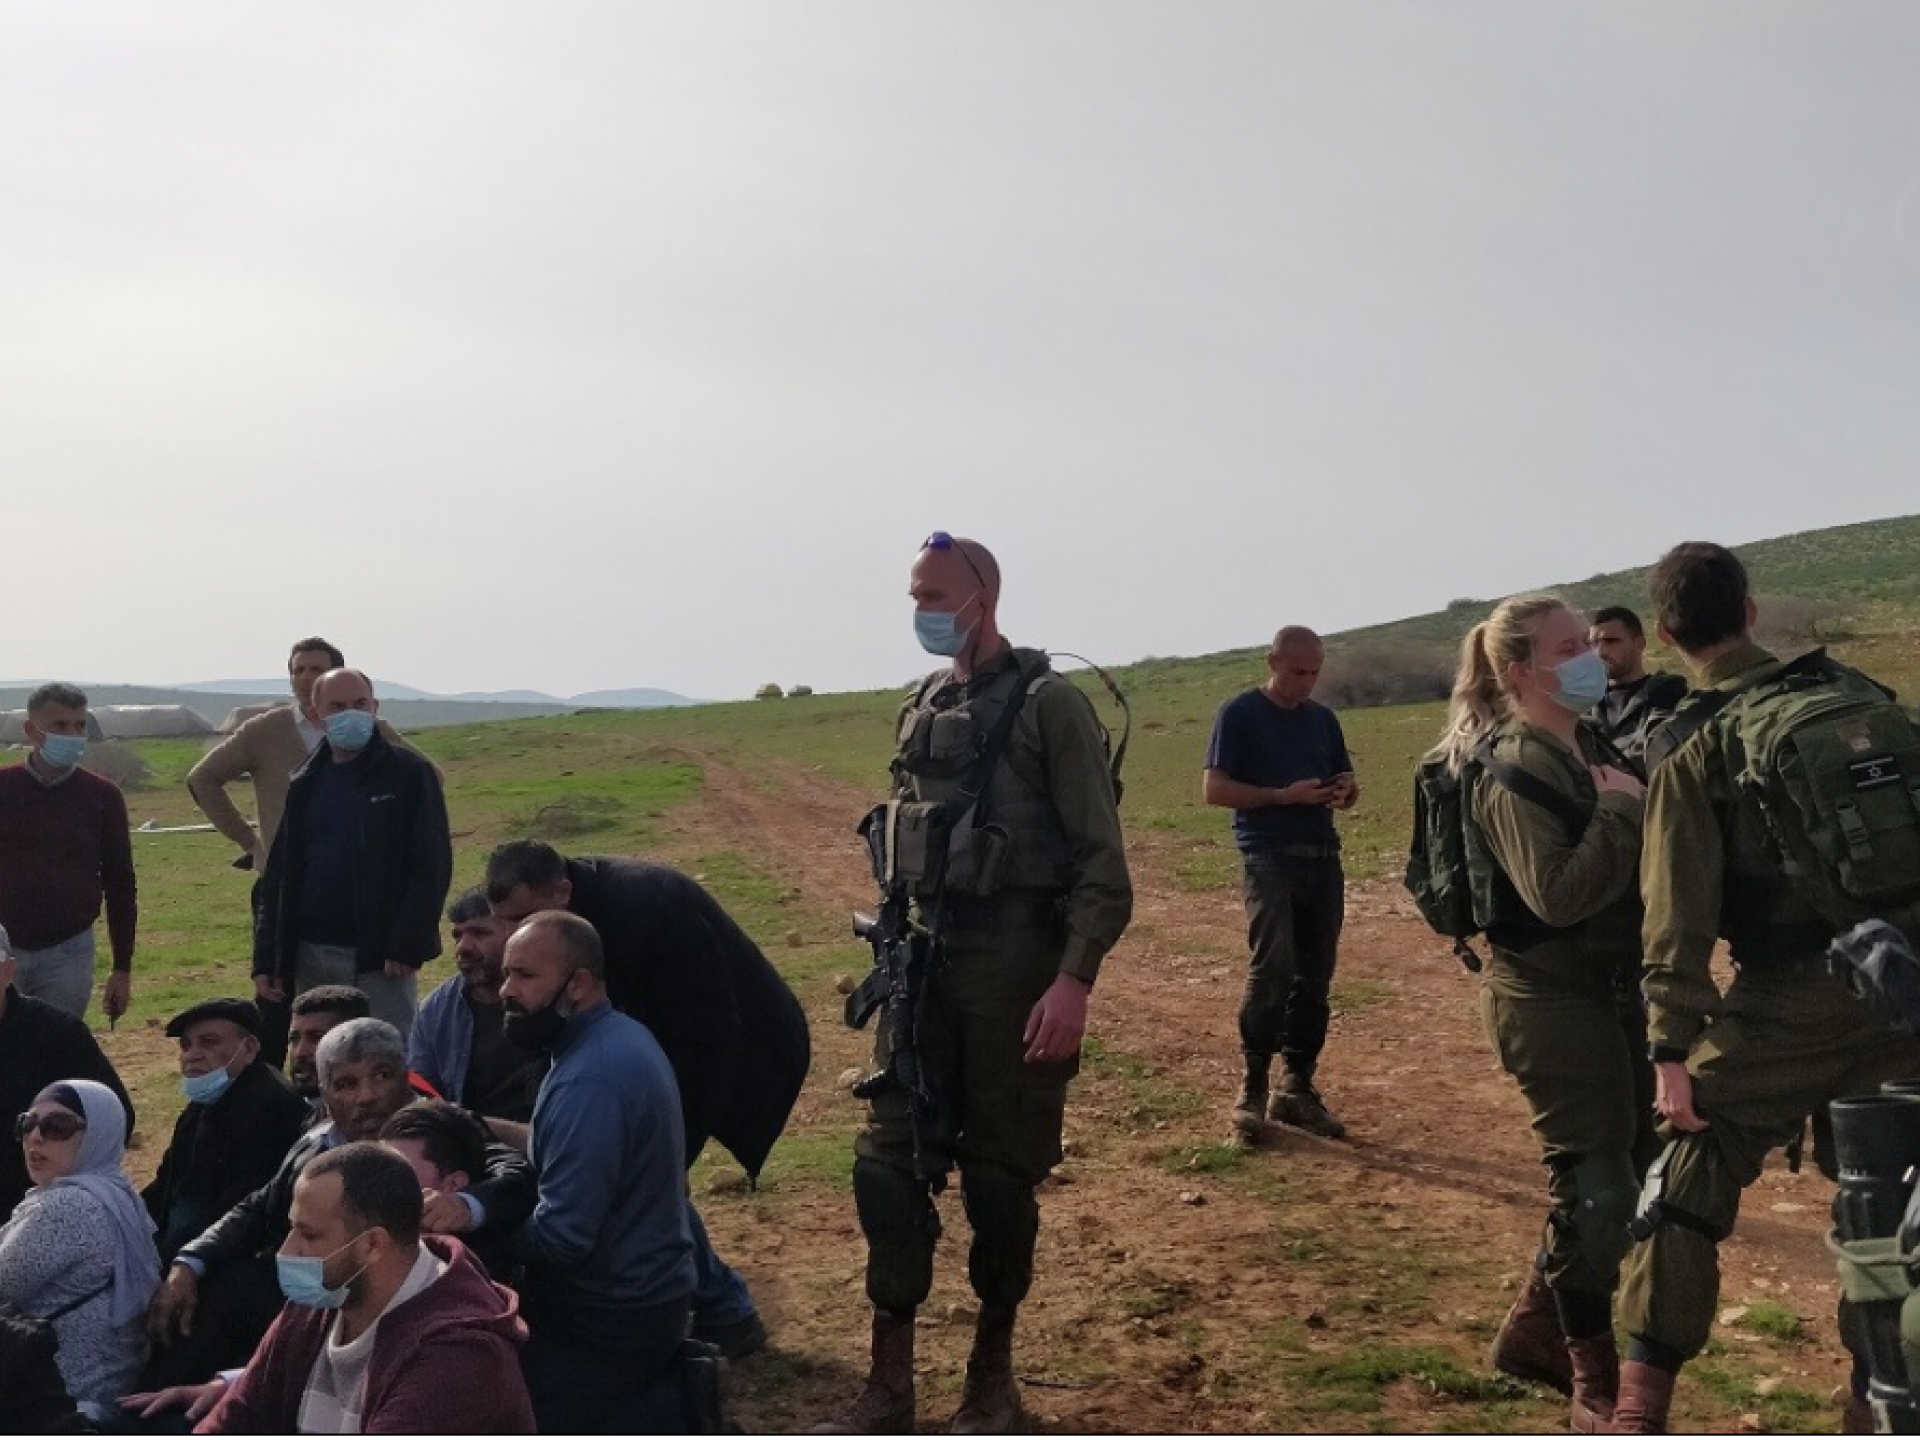 פלסטינים יושבים על האדמה והצבא מנסה לסלק אותם